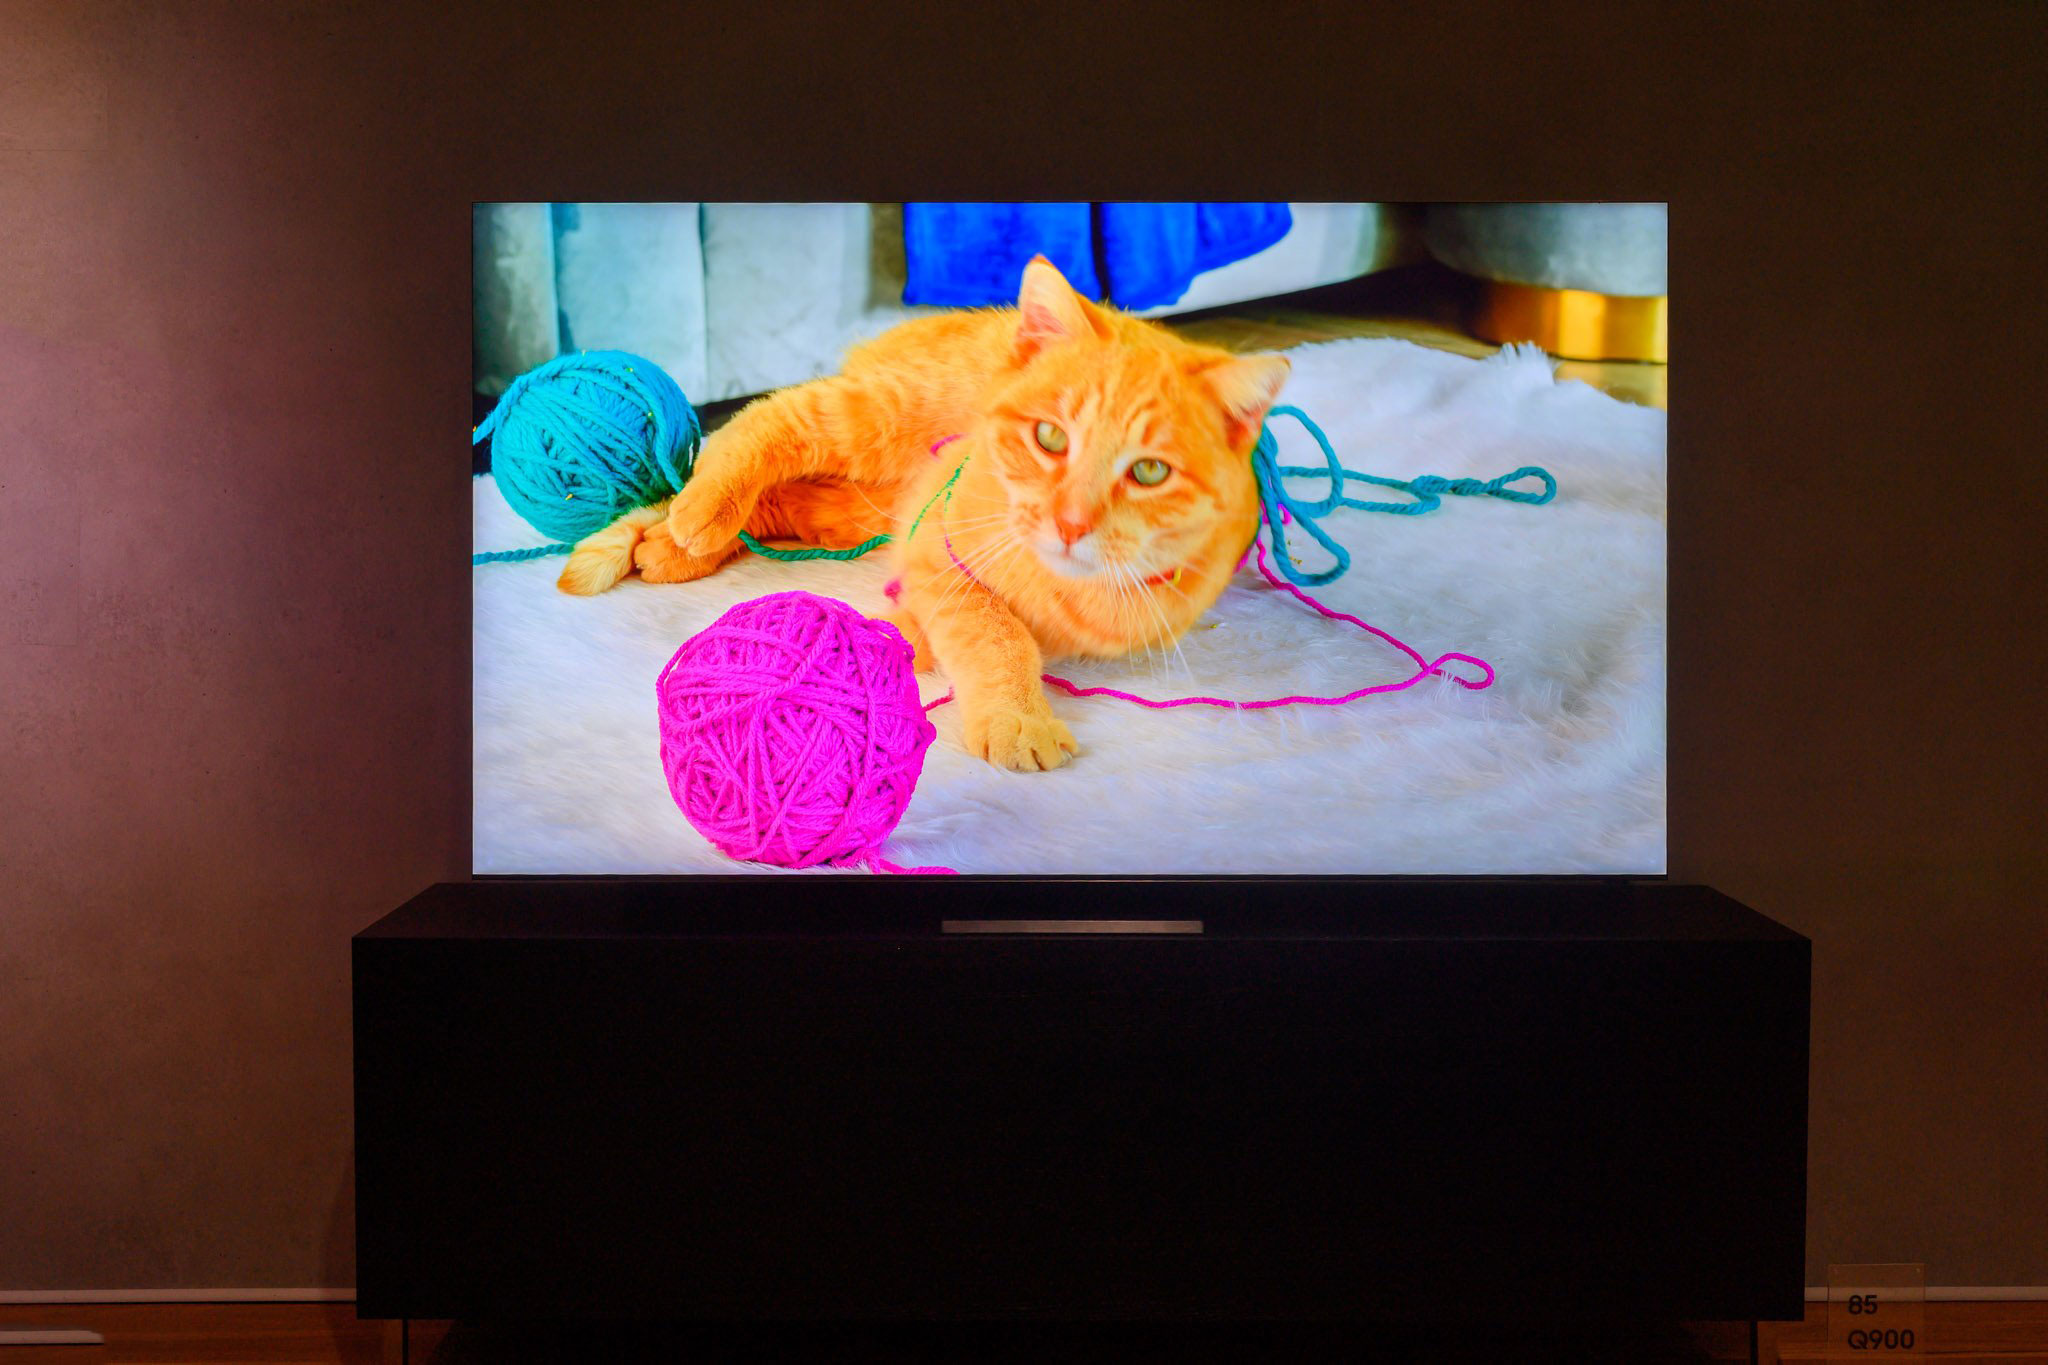 [Sự kiện Online] Samsung chính thức ra mắt TV QLED 8K mới và các sản phẩm nghe nhìn 2020